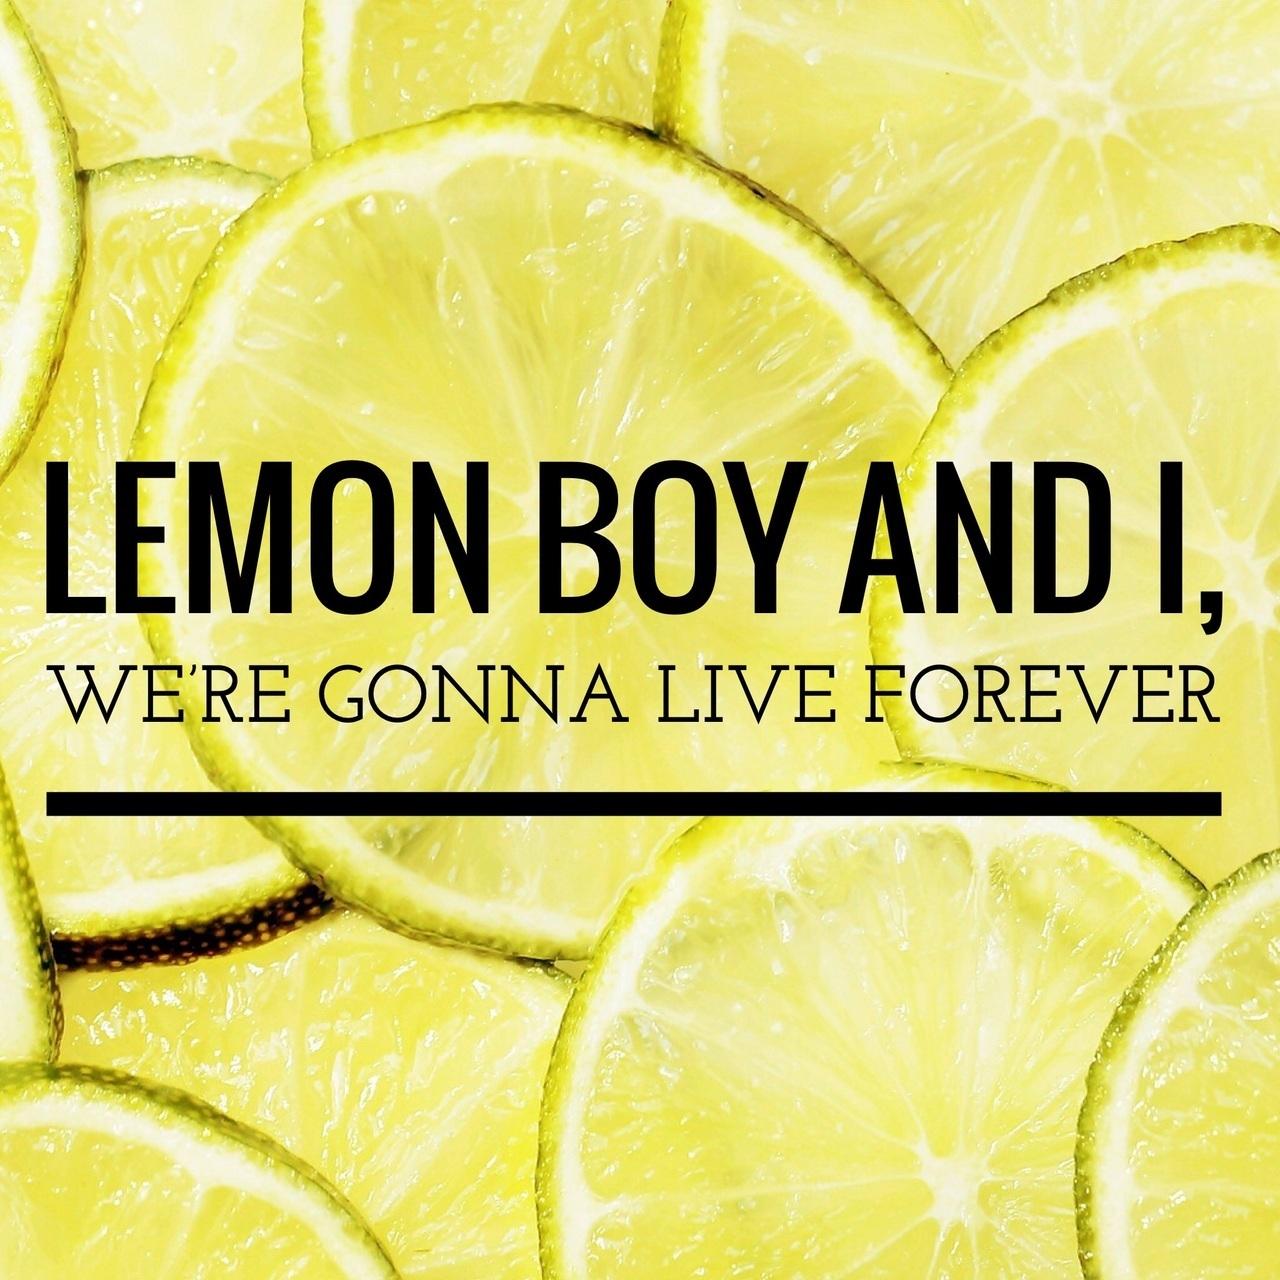 Lemon boy and I, we're gonna live forever Cavetown